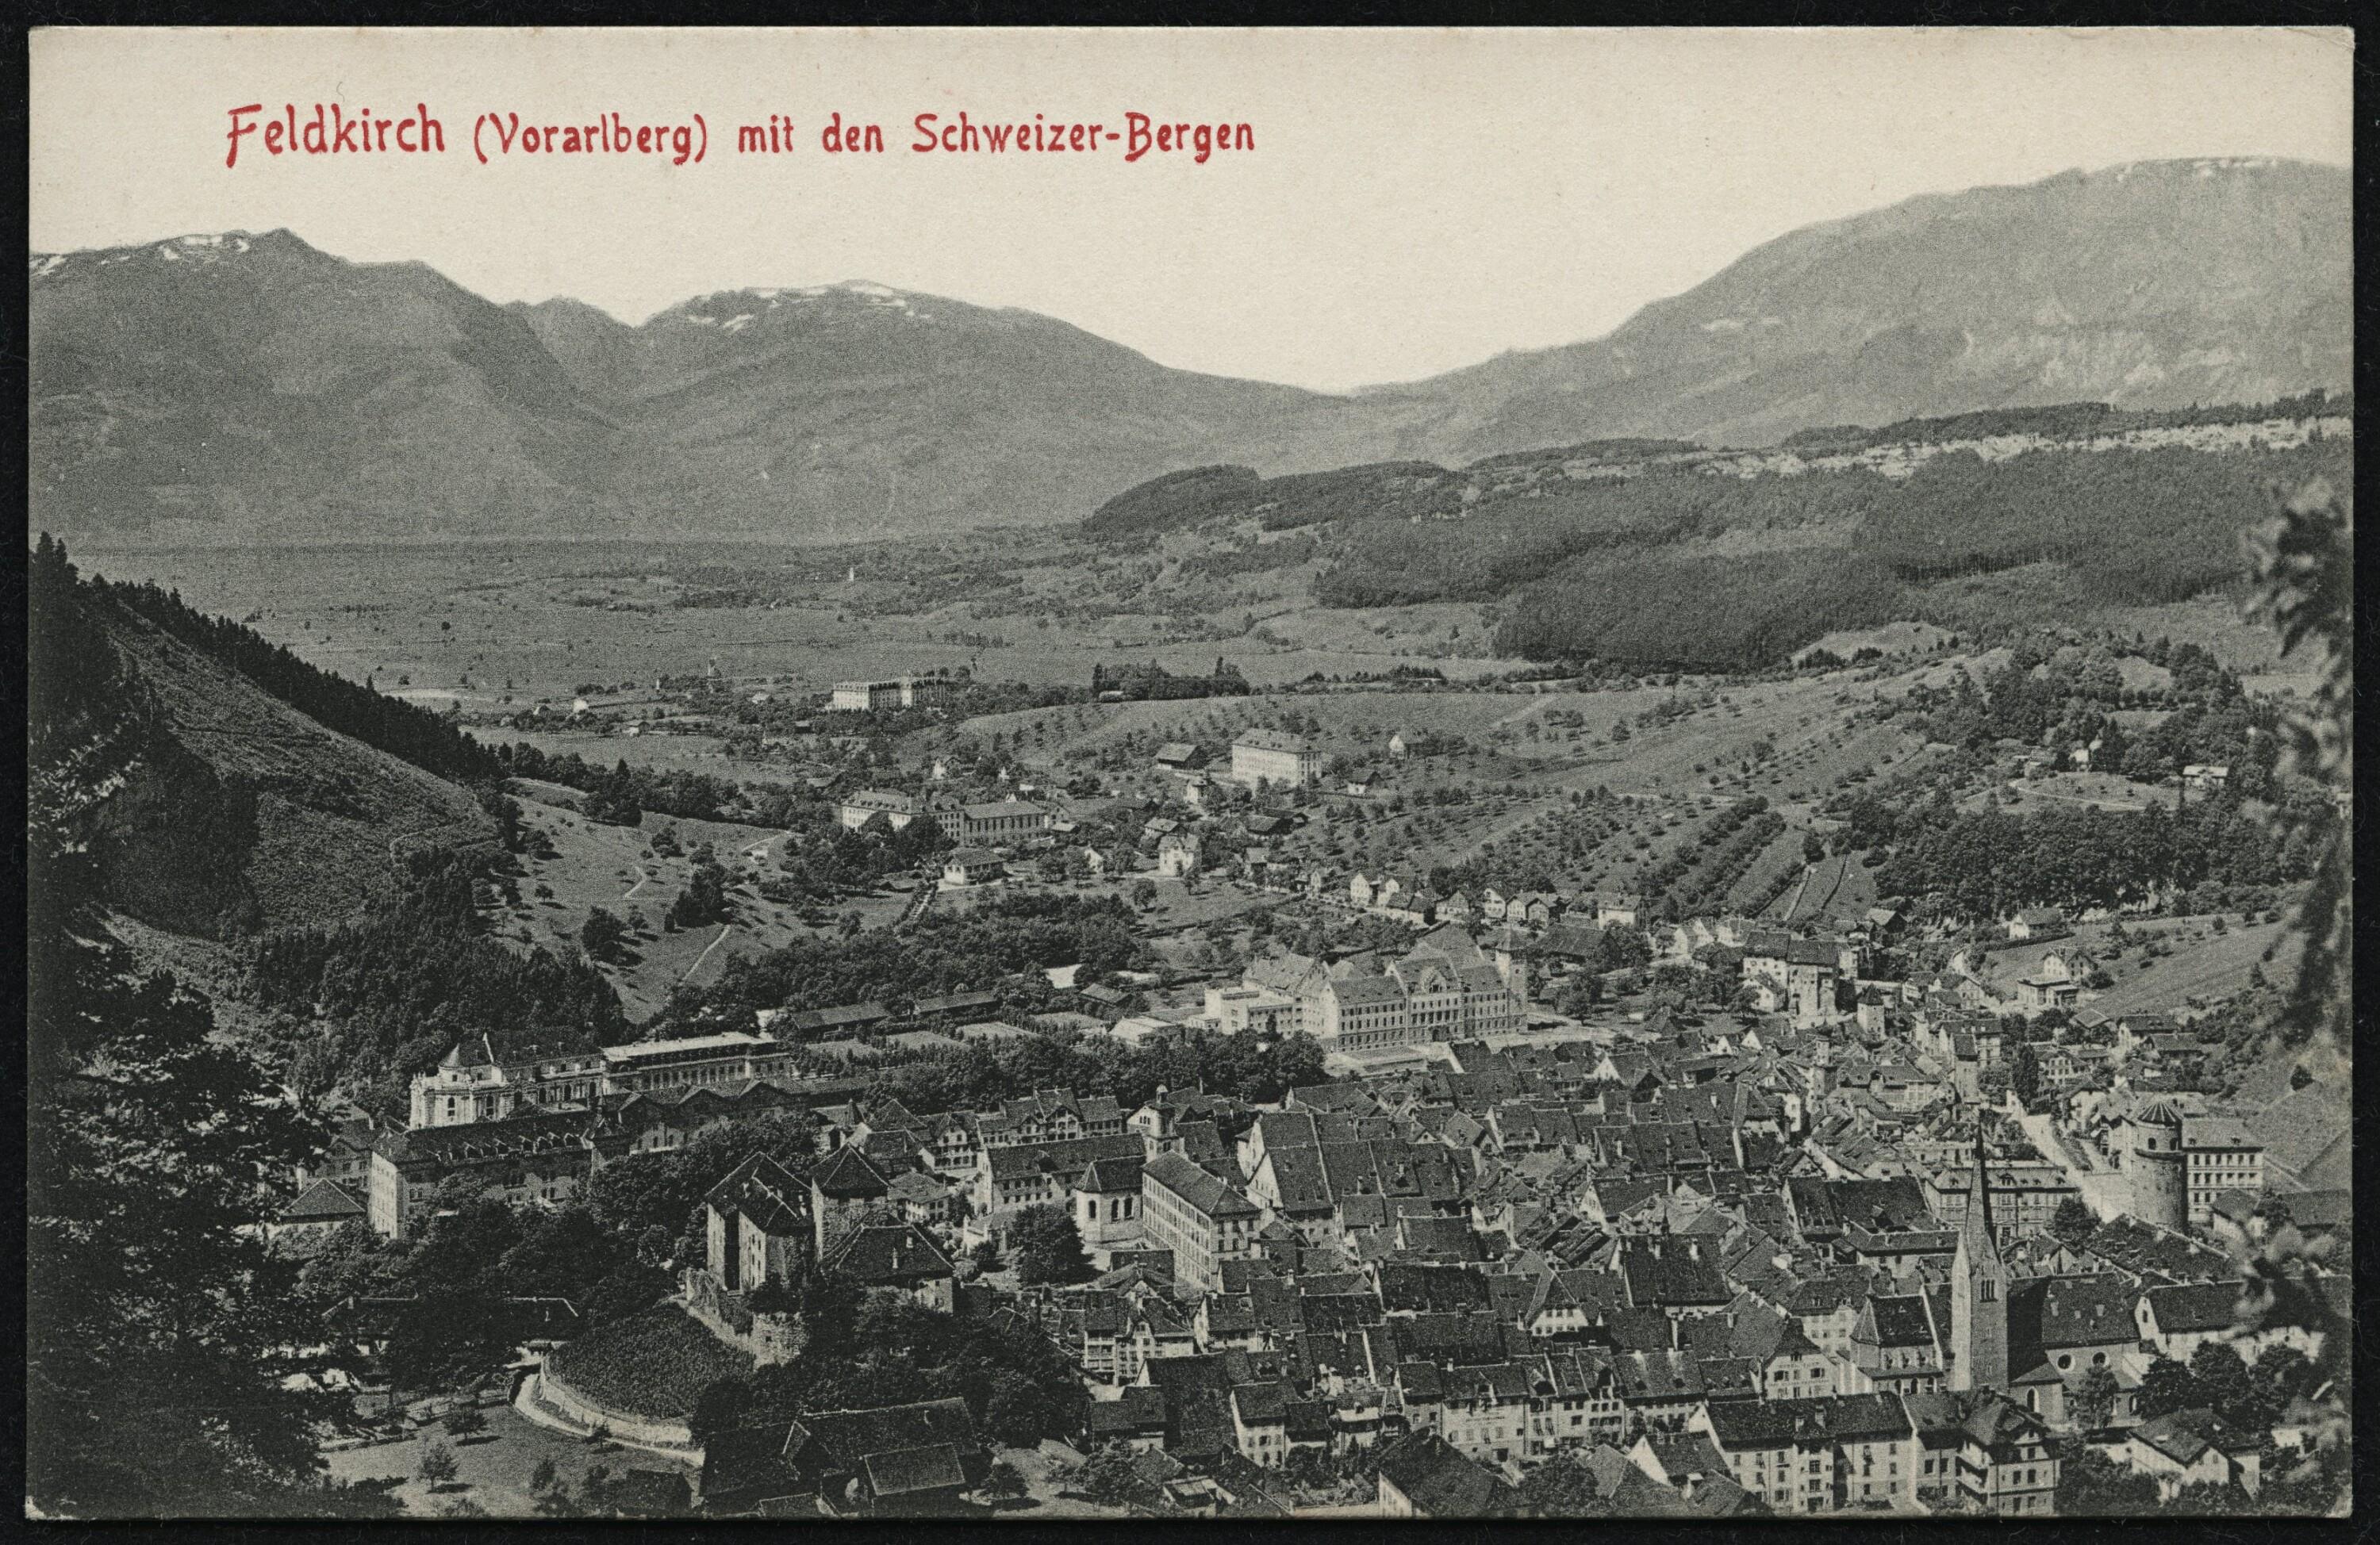 Feldkirch (Vorarlberg) mit den Schweizer-Bergen></div>


    <hr>
    <div class=